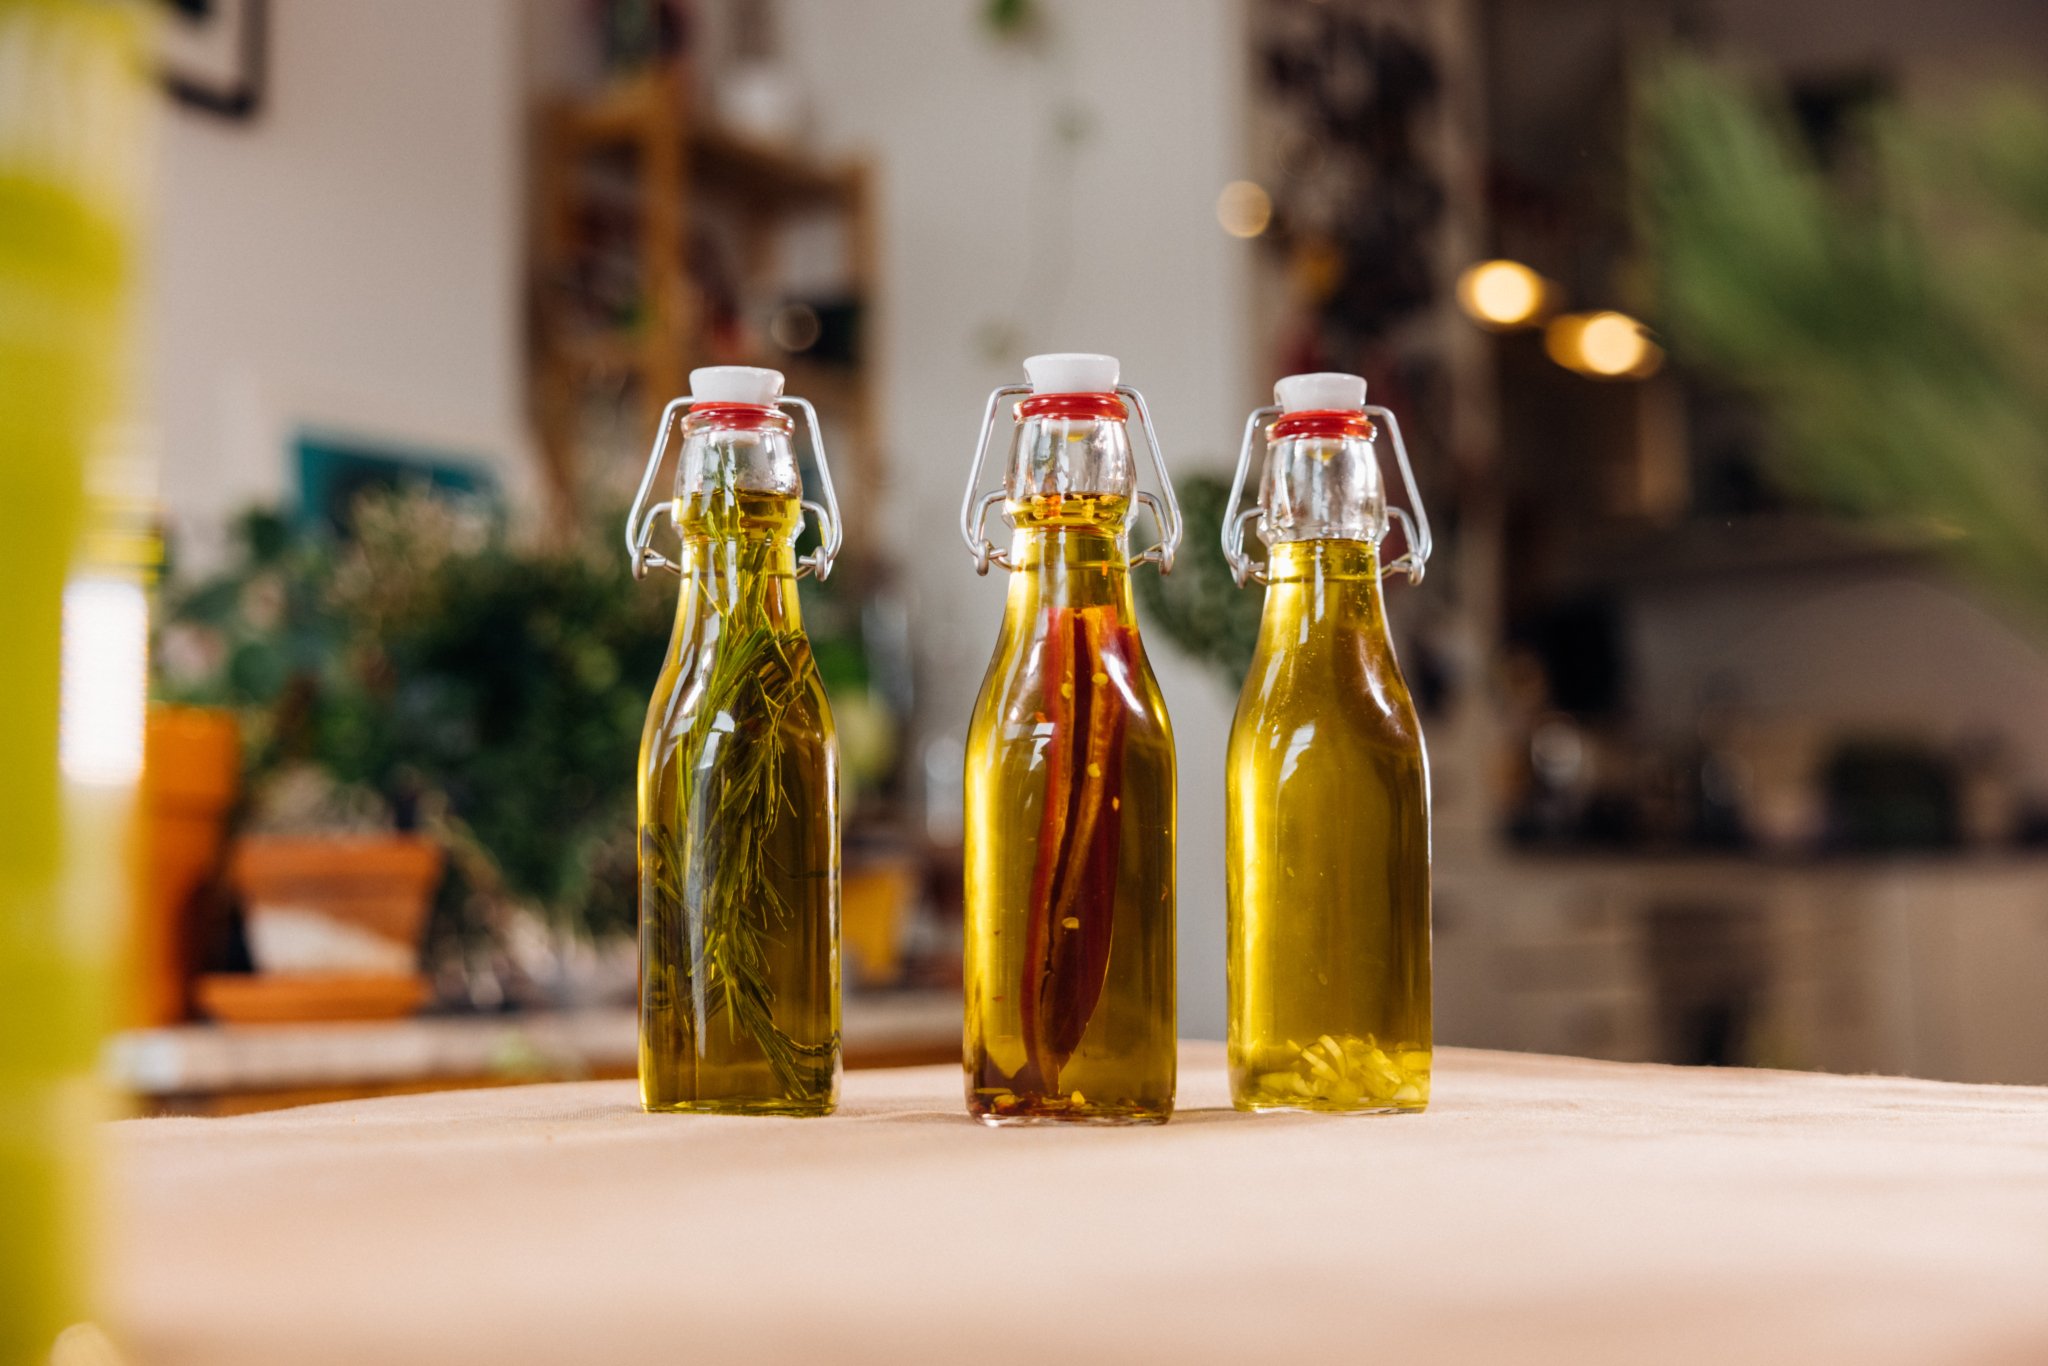 3 infused olijfoliën met een heerlijke toevoeging: chili, knoflook en rozemarijn